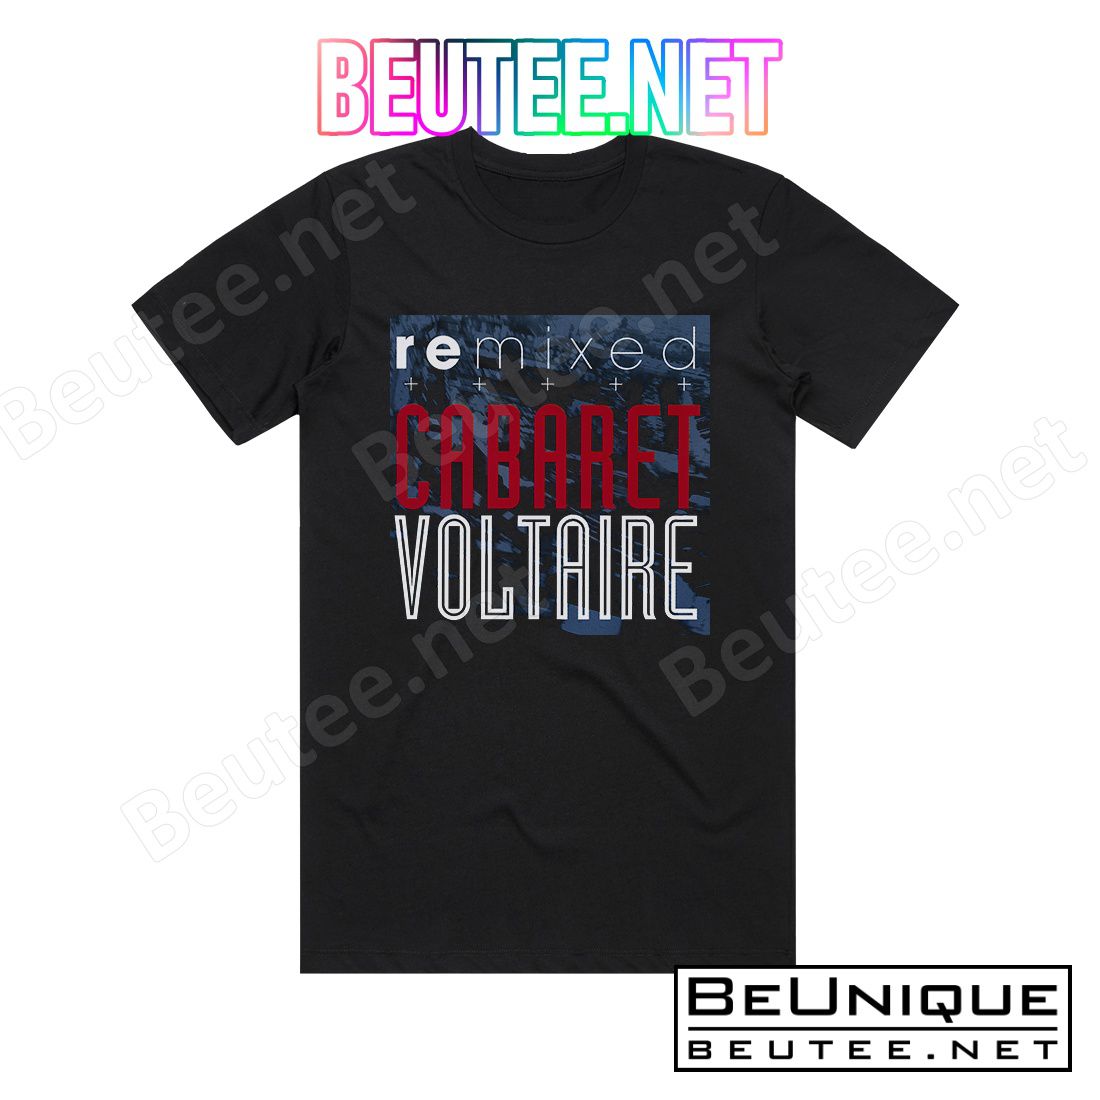 Cabaret Voltaire Remixed Album Cover T-Shirt